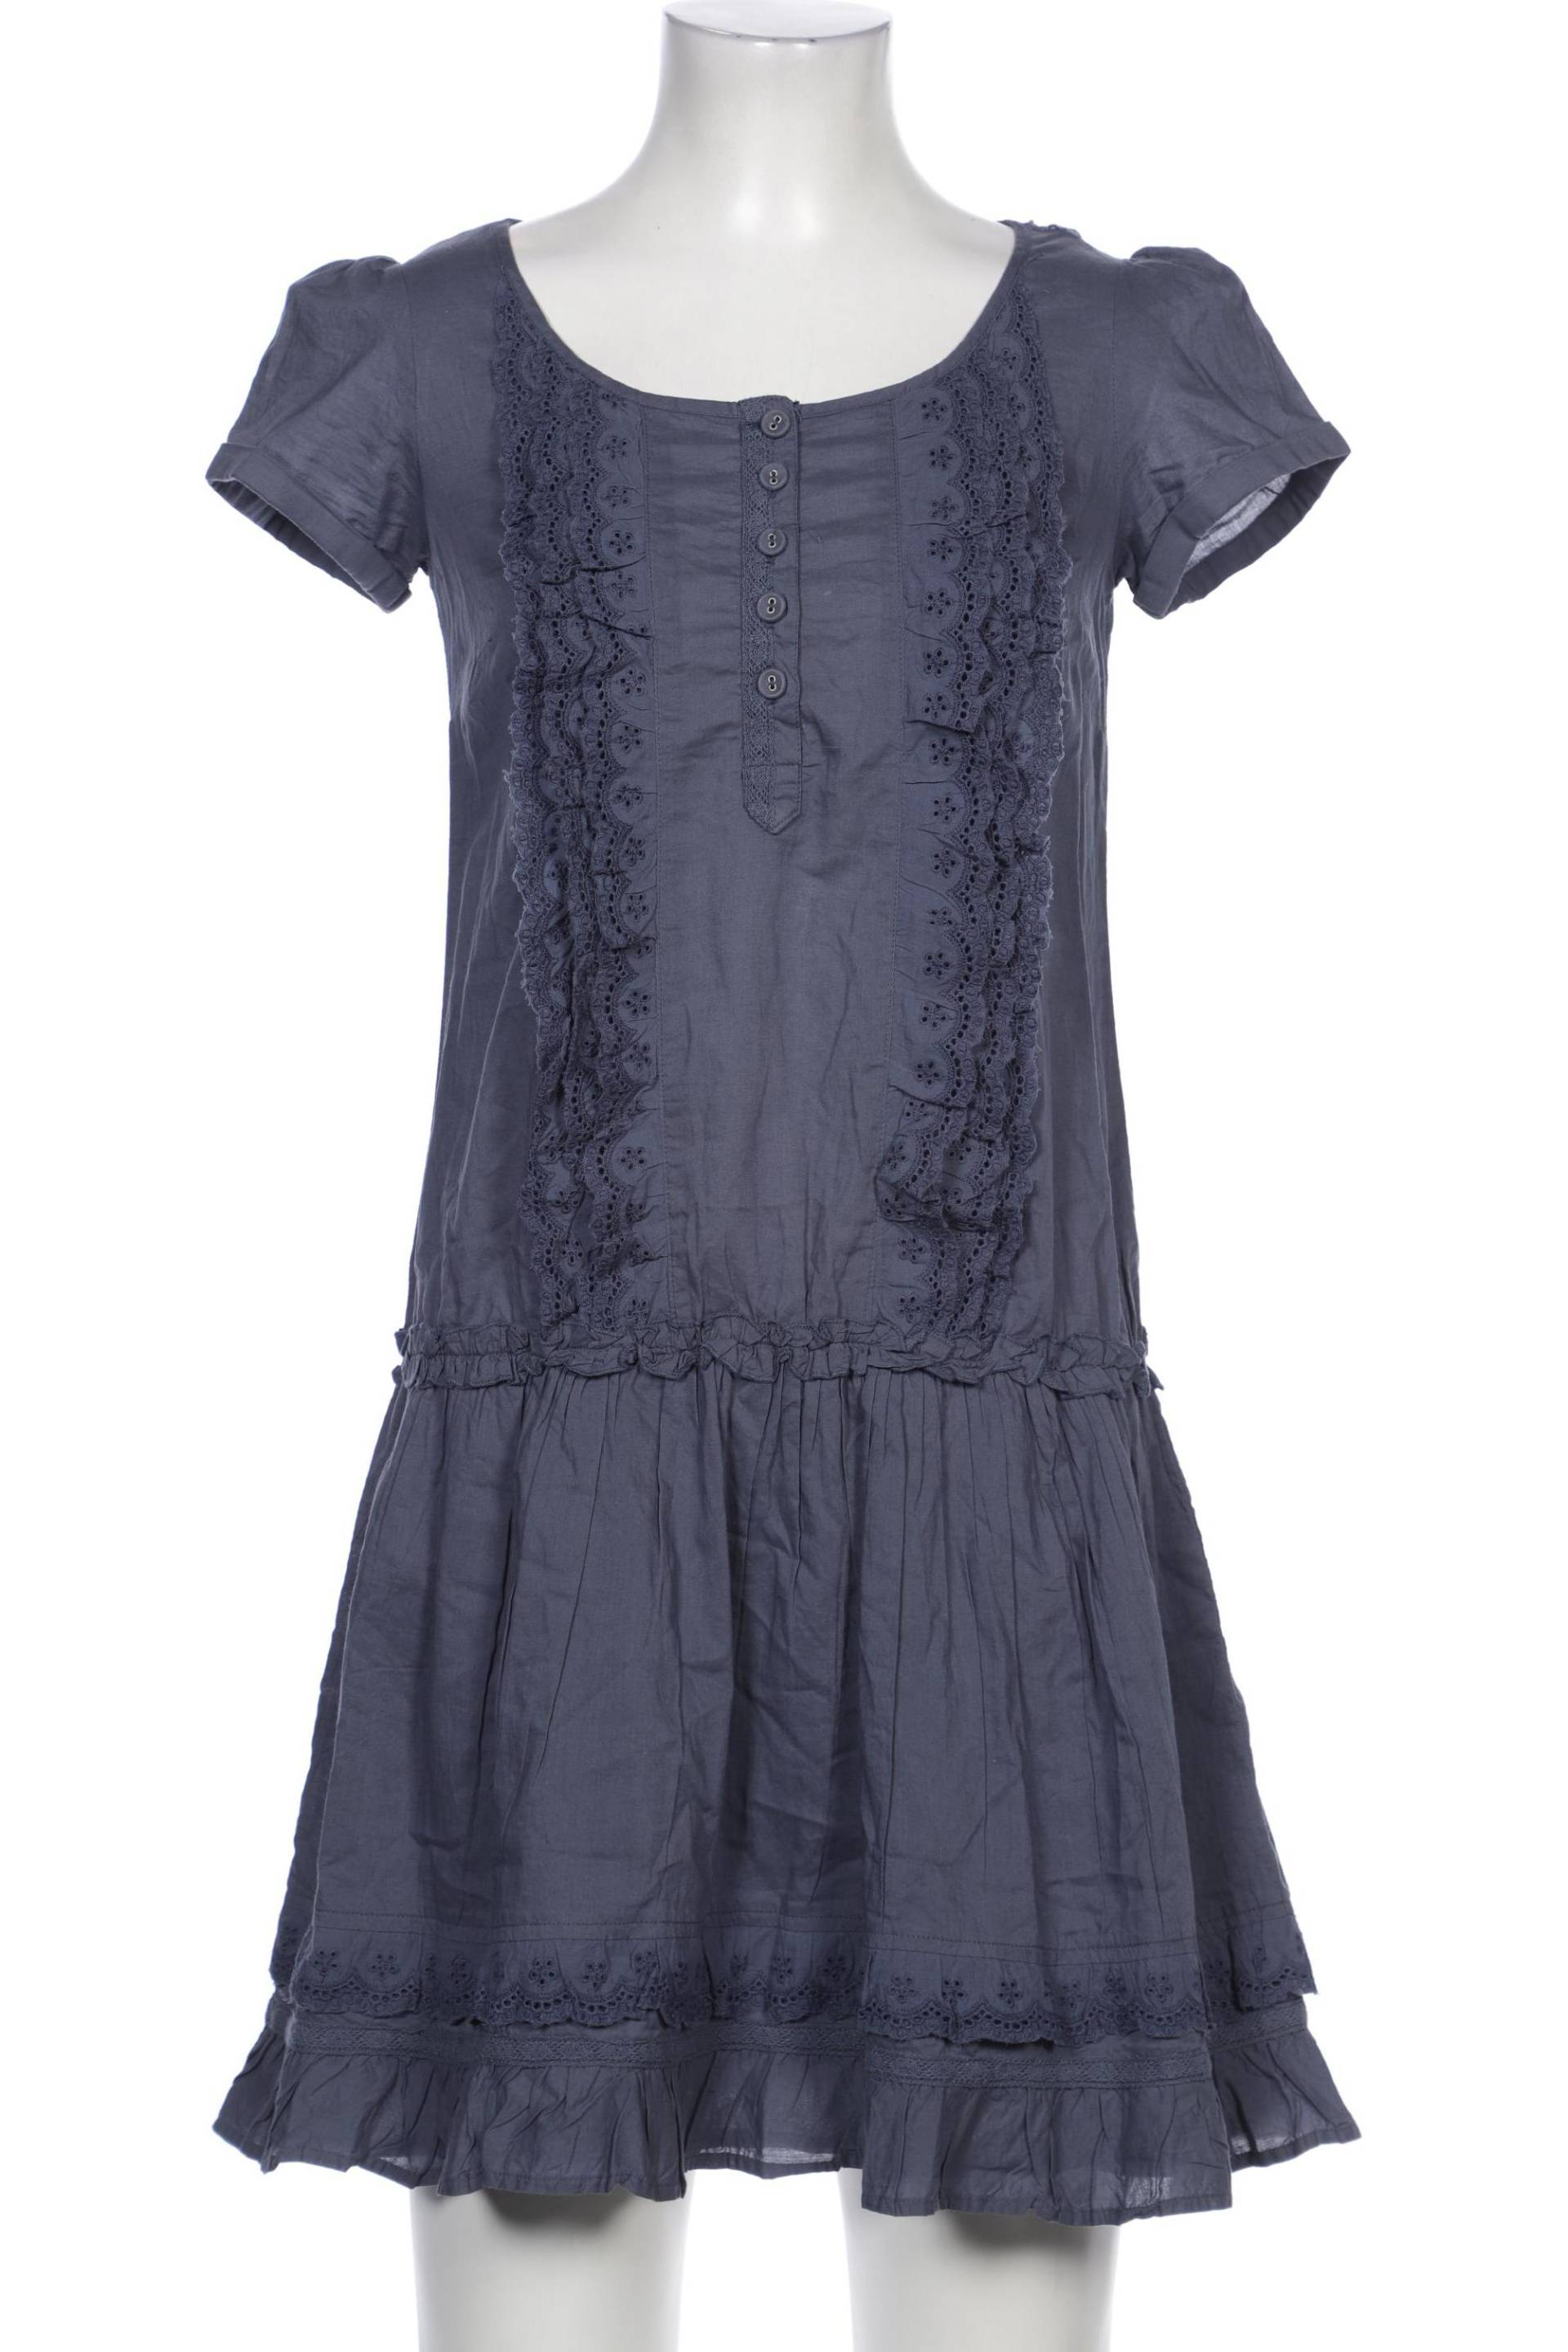 NAF NAF Damen Kleid, marineblau, Gr. 34 von Naf Naf